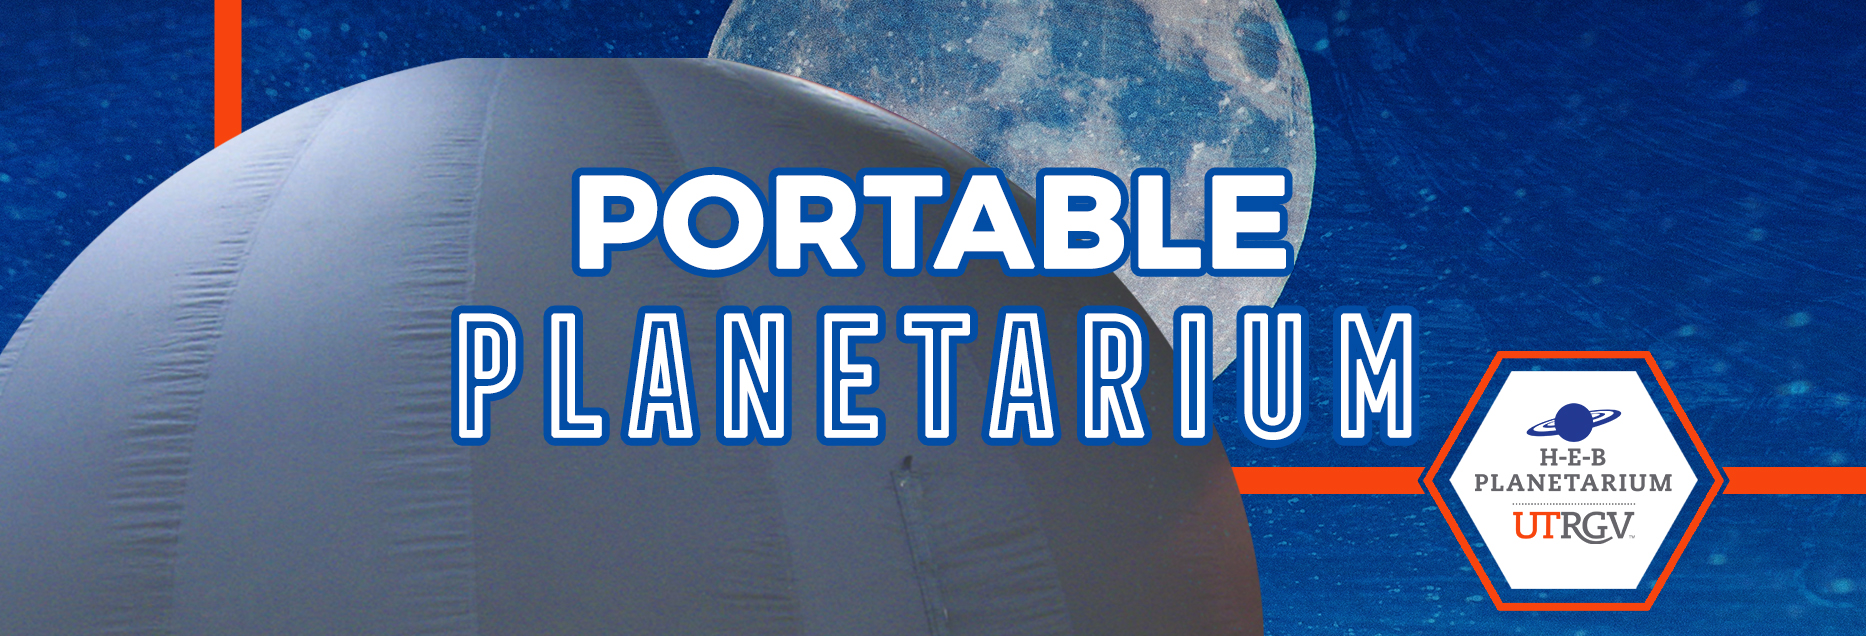 UTRGV Planetarium Discover = Portable Dome Information